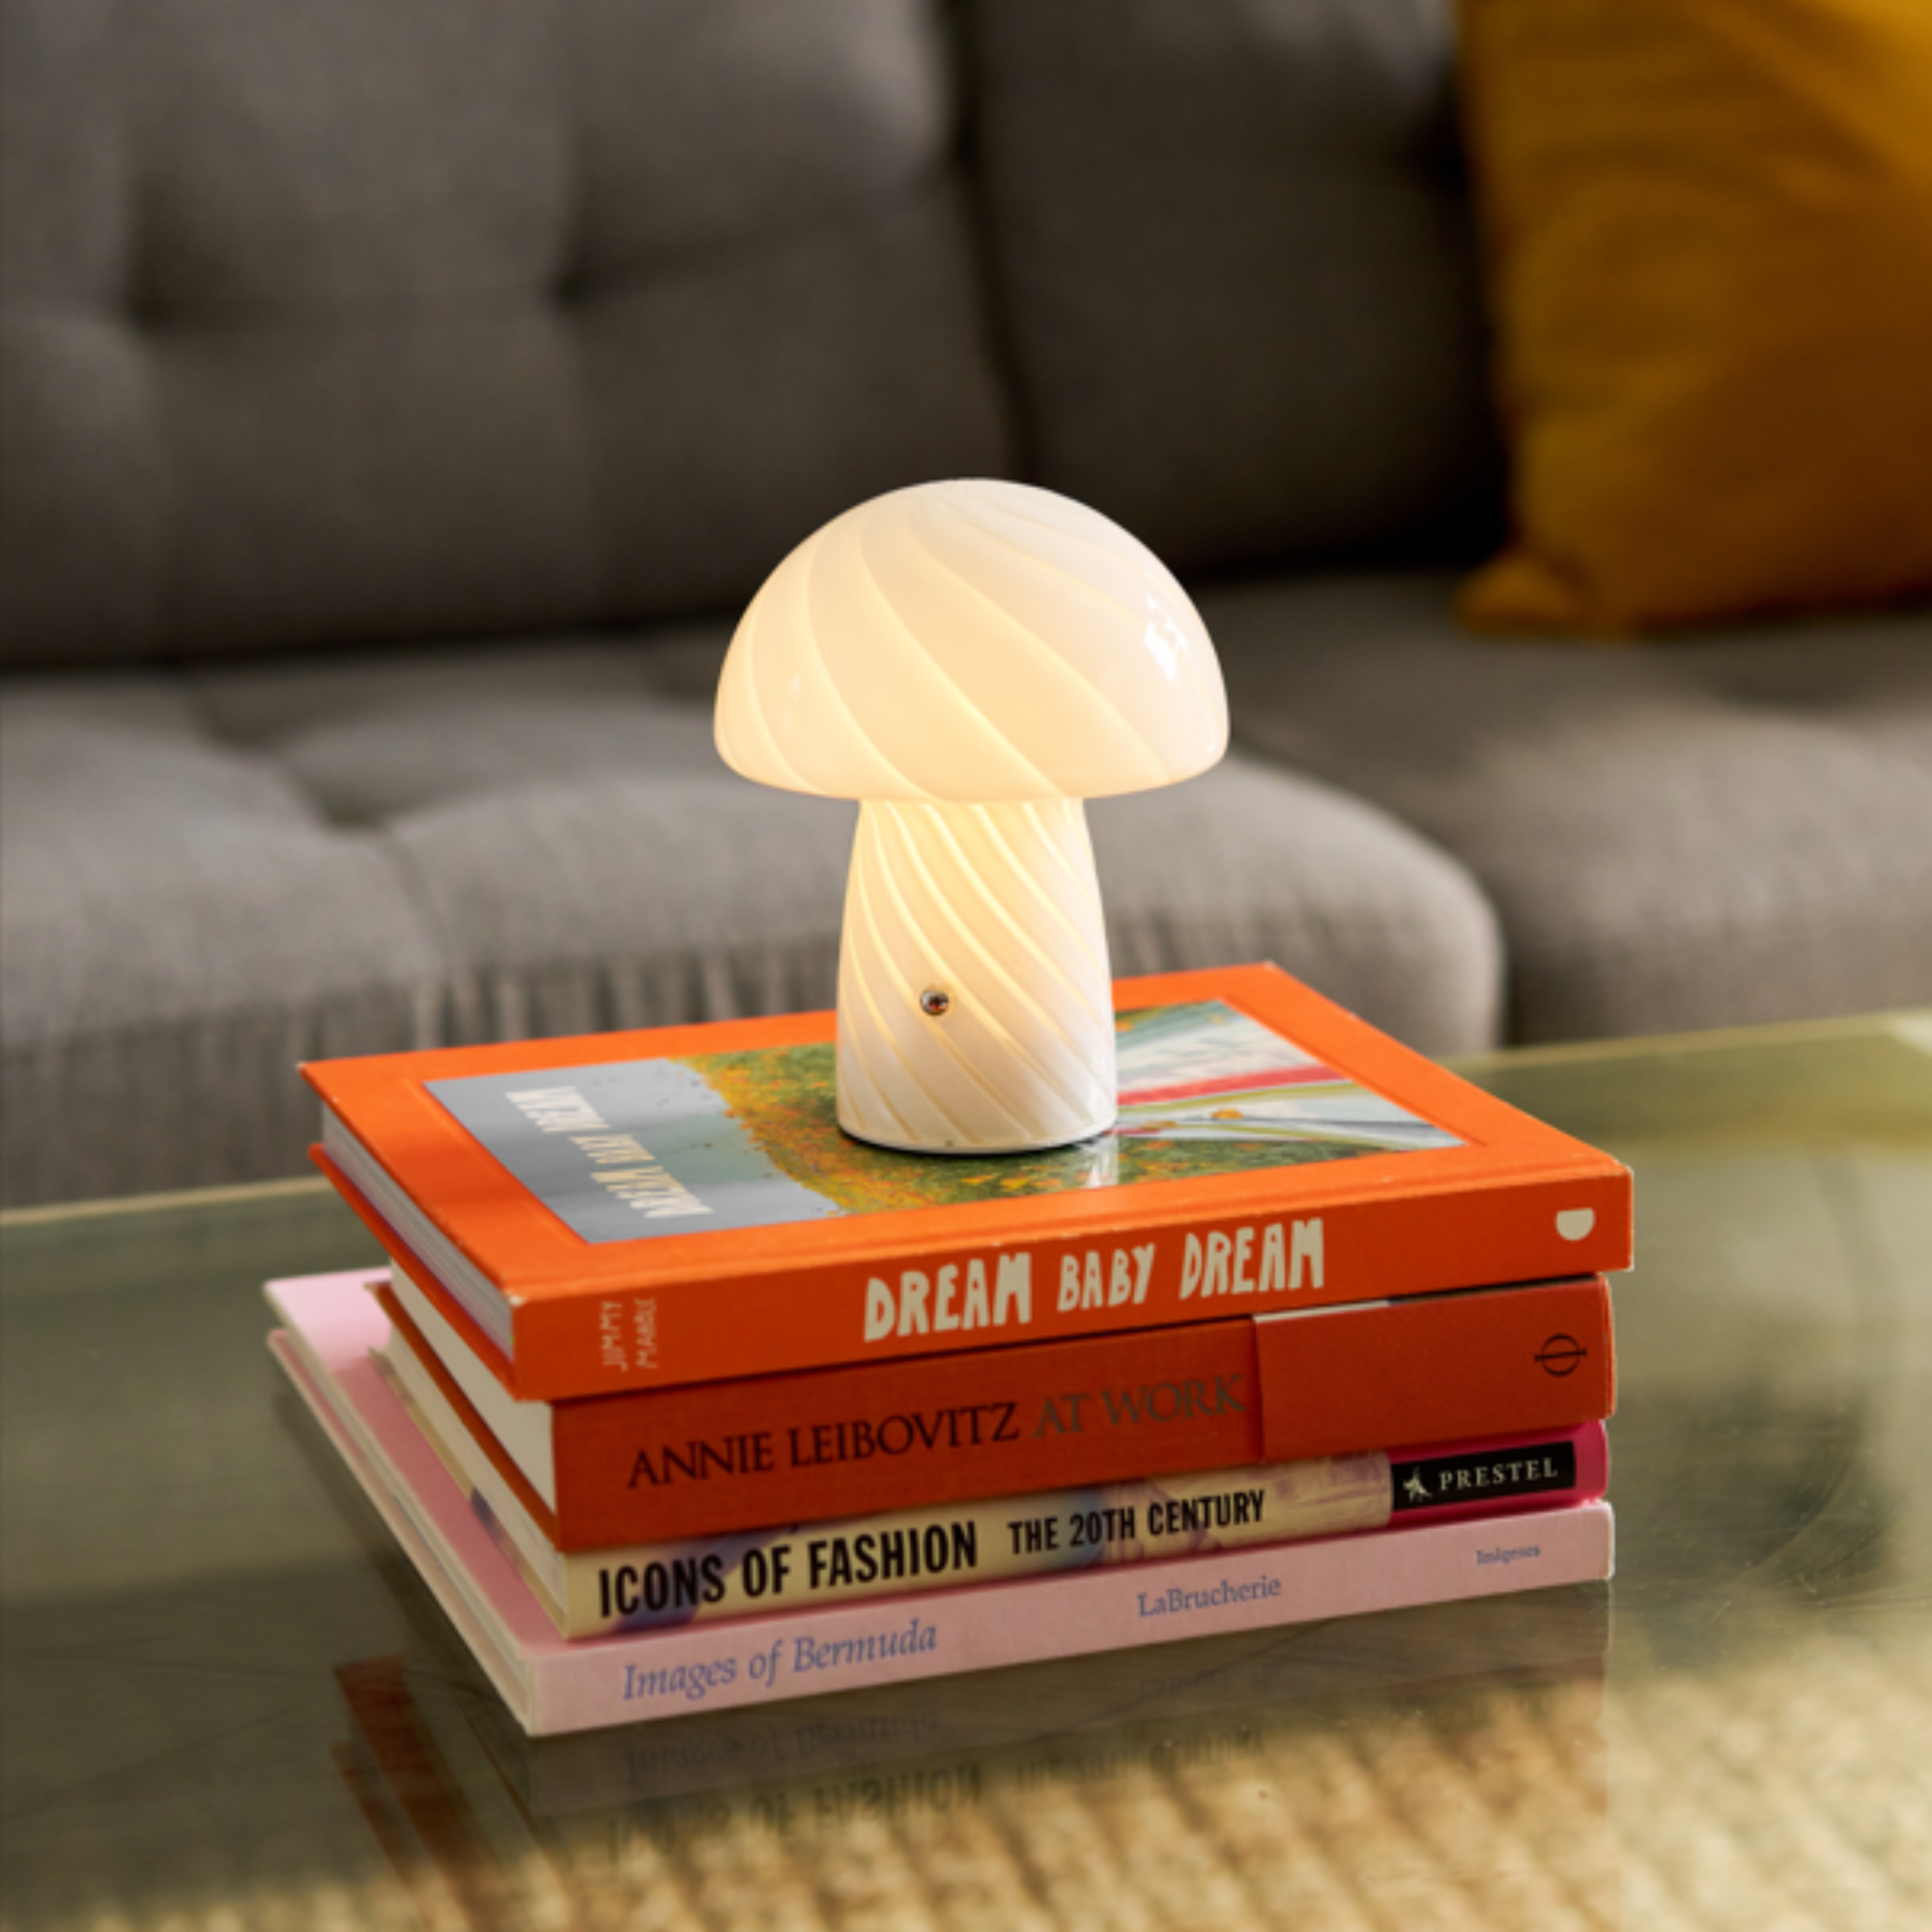 Portable Mini Glass Mushroom Lamp, White